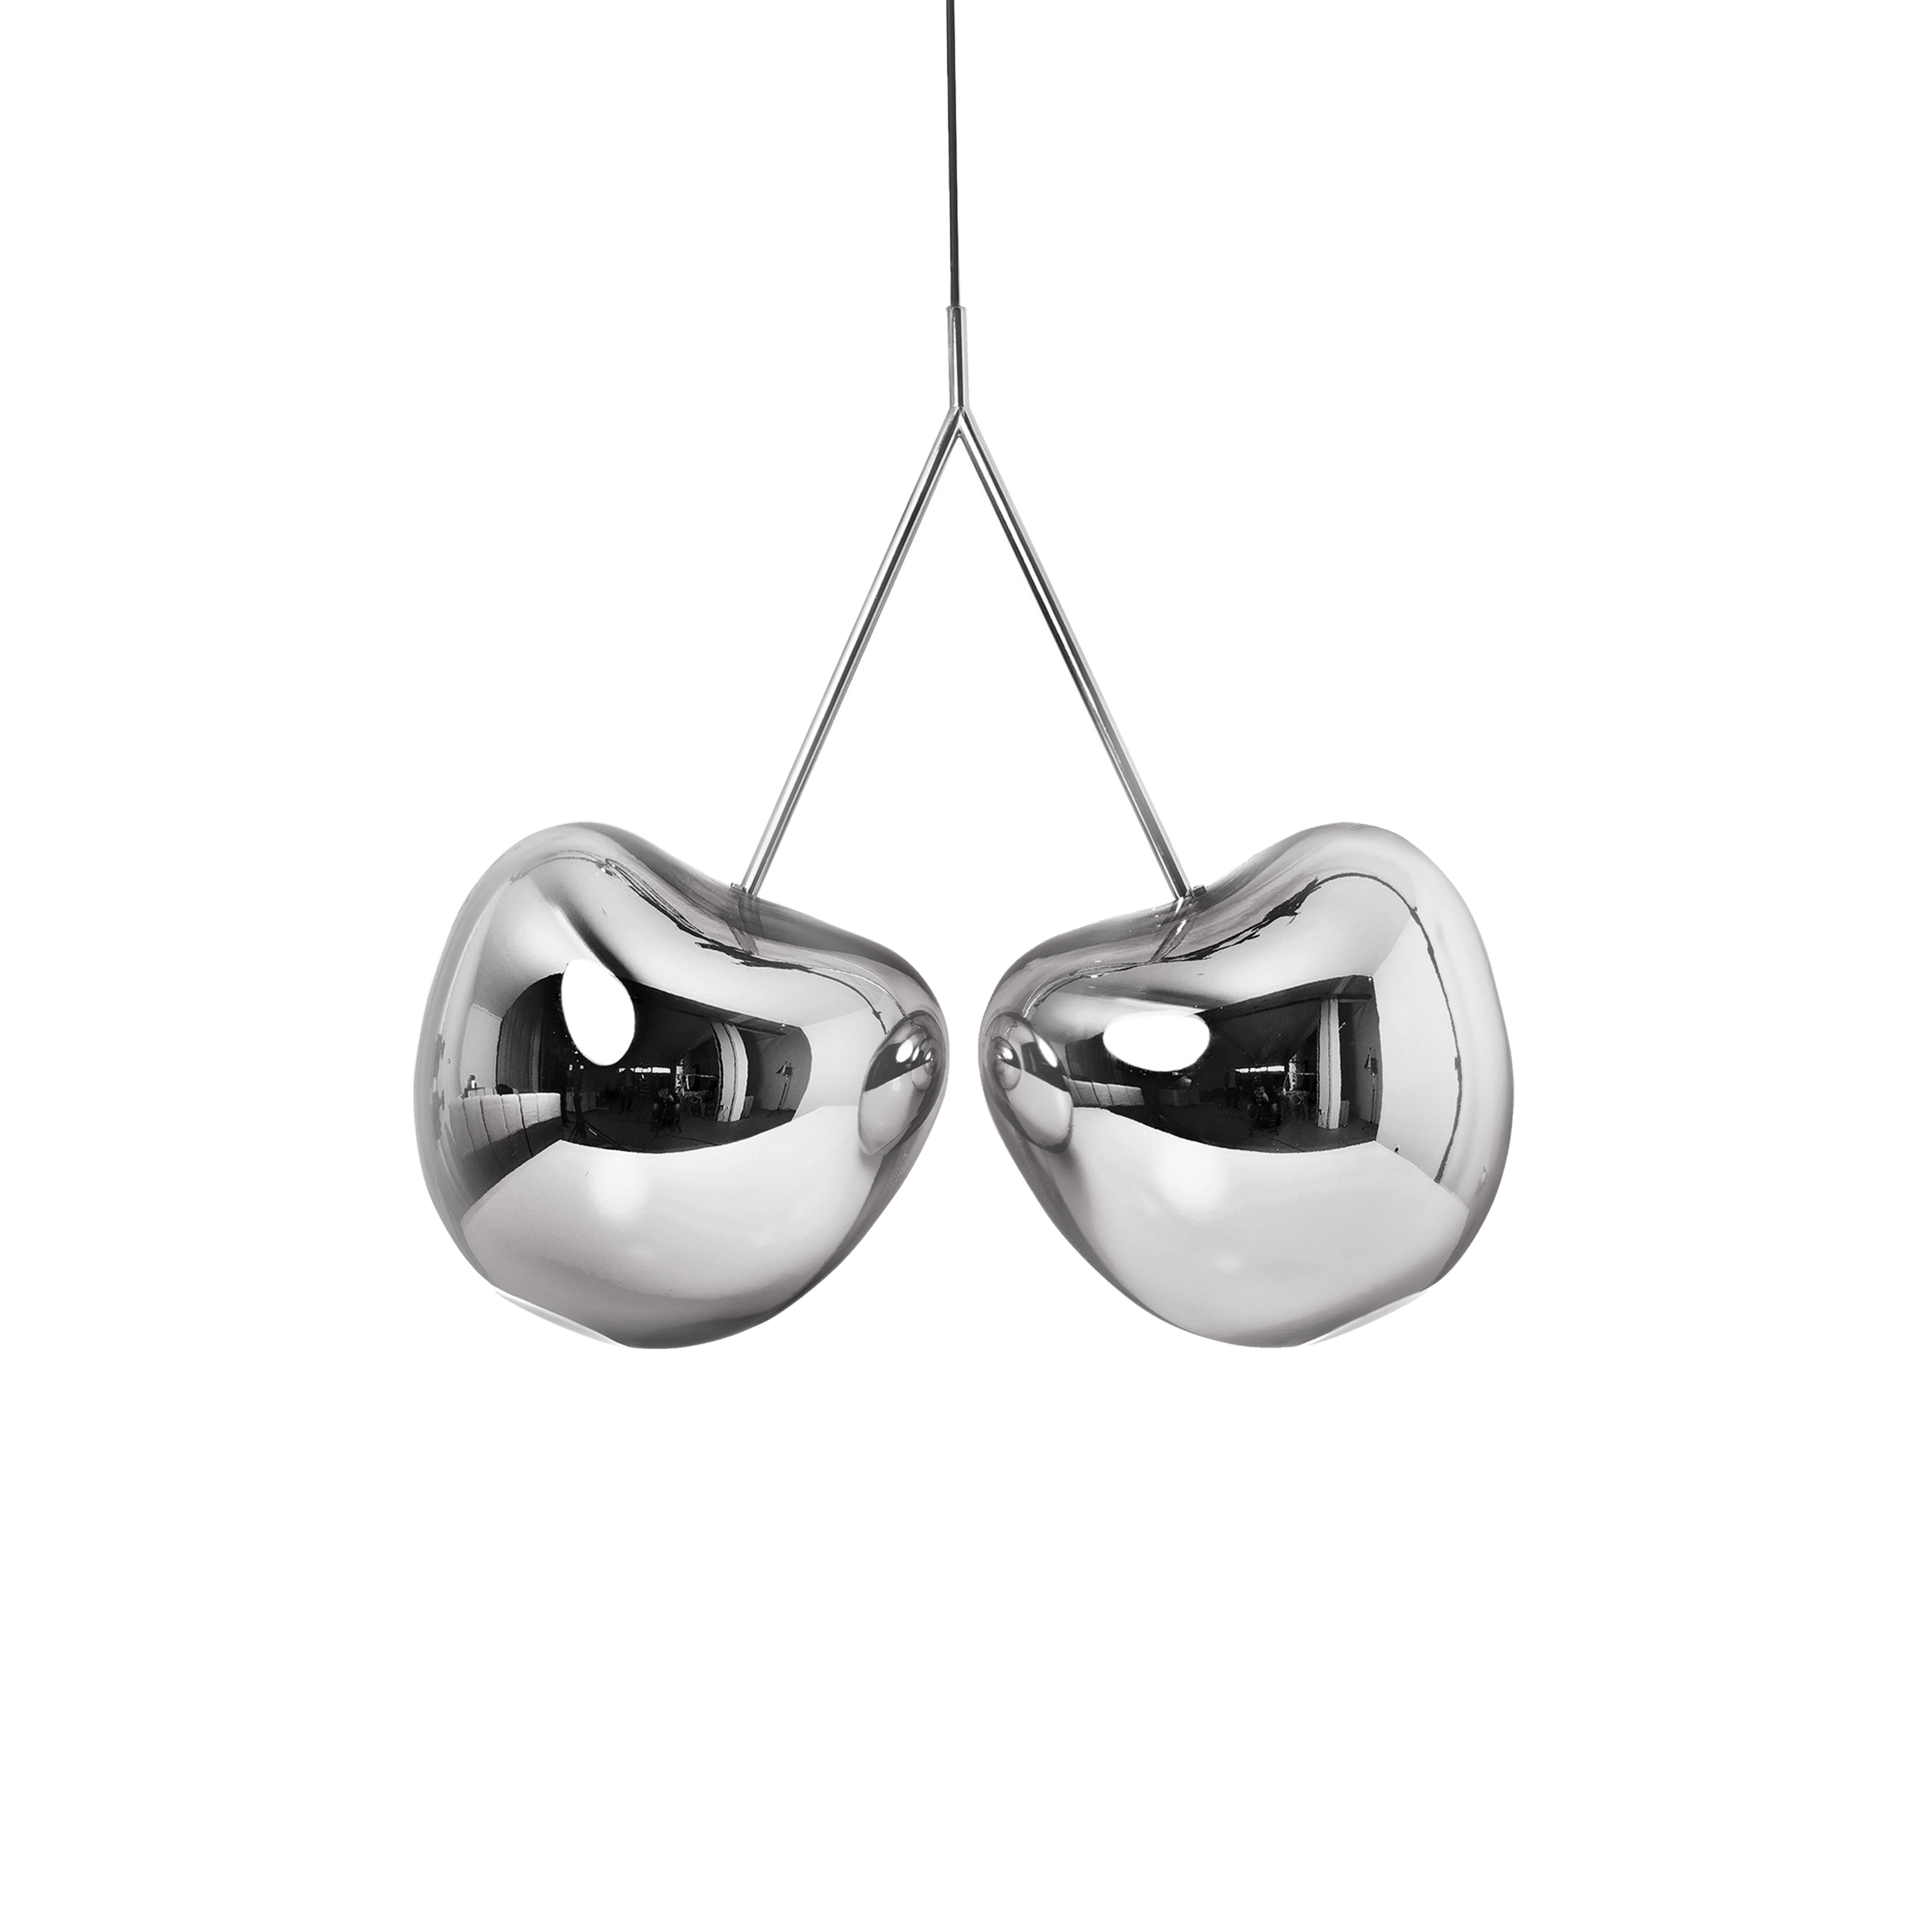 En vente : Silver Lampe décorative moderne en métal finition or ou argent en forme de cerisier